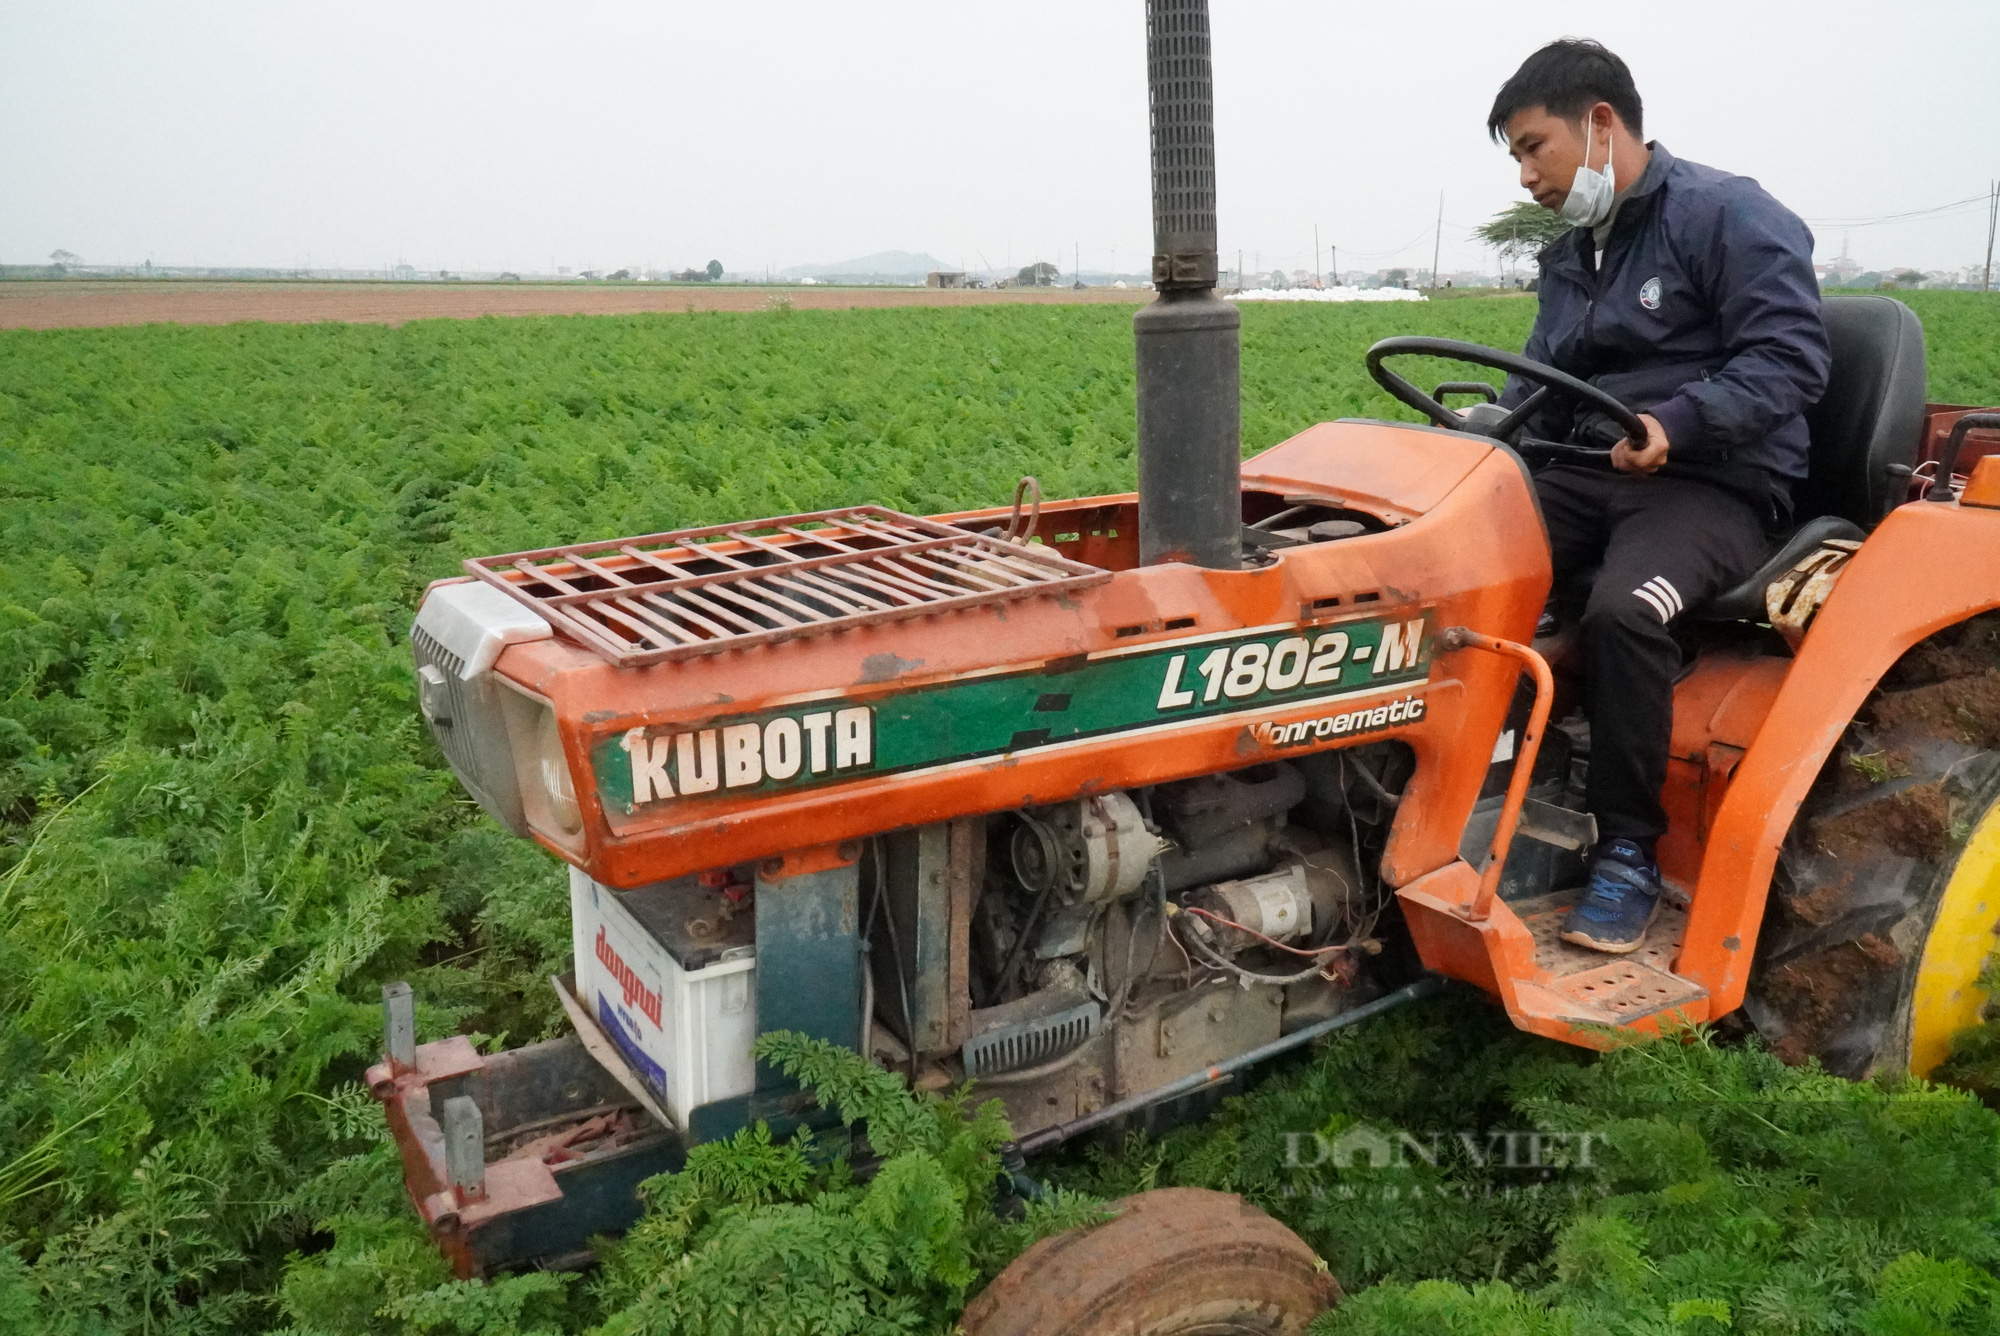 Nông dân trồng cà rốt ở Bắc Ninh trúng lớn, có nơi cho giá trị lên tới 500 triệu đồng/ha - Ảnh 1.